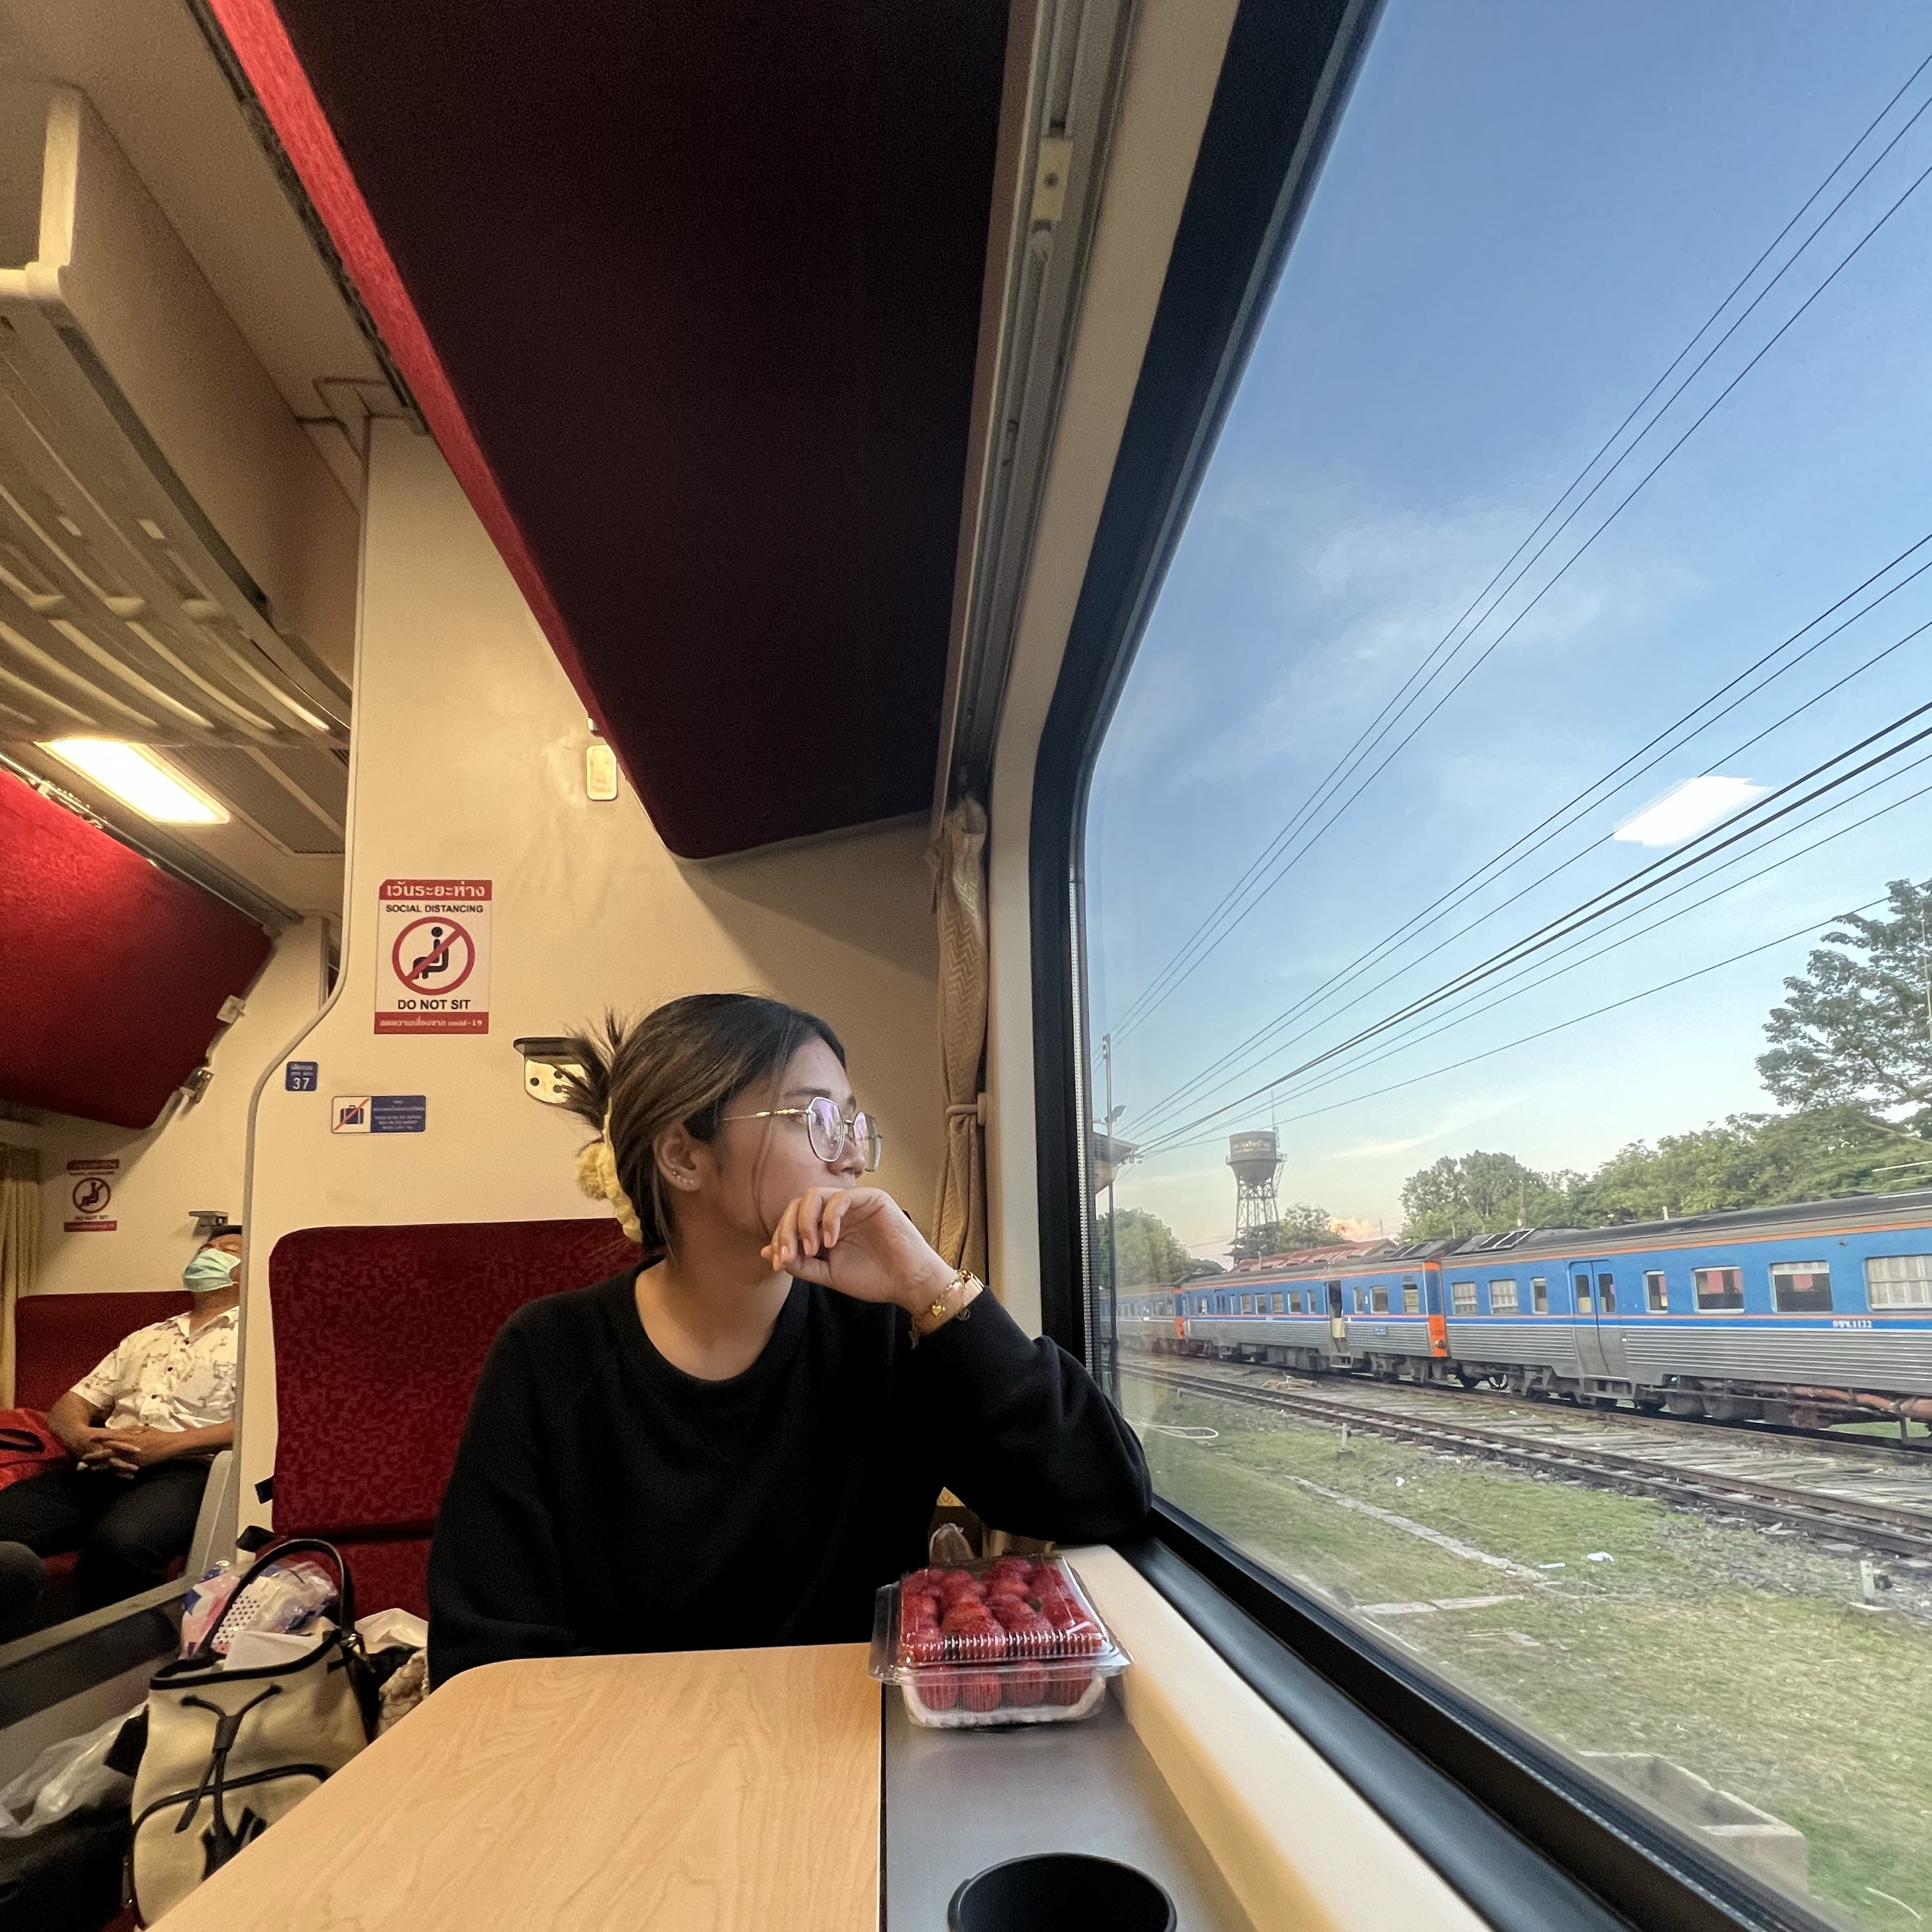 รีวิวรถไฟกรุงเทพ -เชียงใหม่ ครั้งแรก ปู๊นๆ 🚂🚂 | Trip.com กรุงเทพฯ